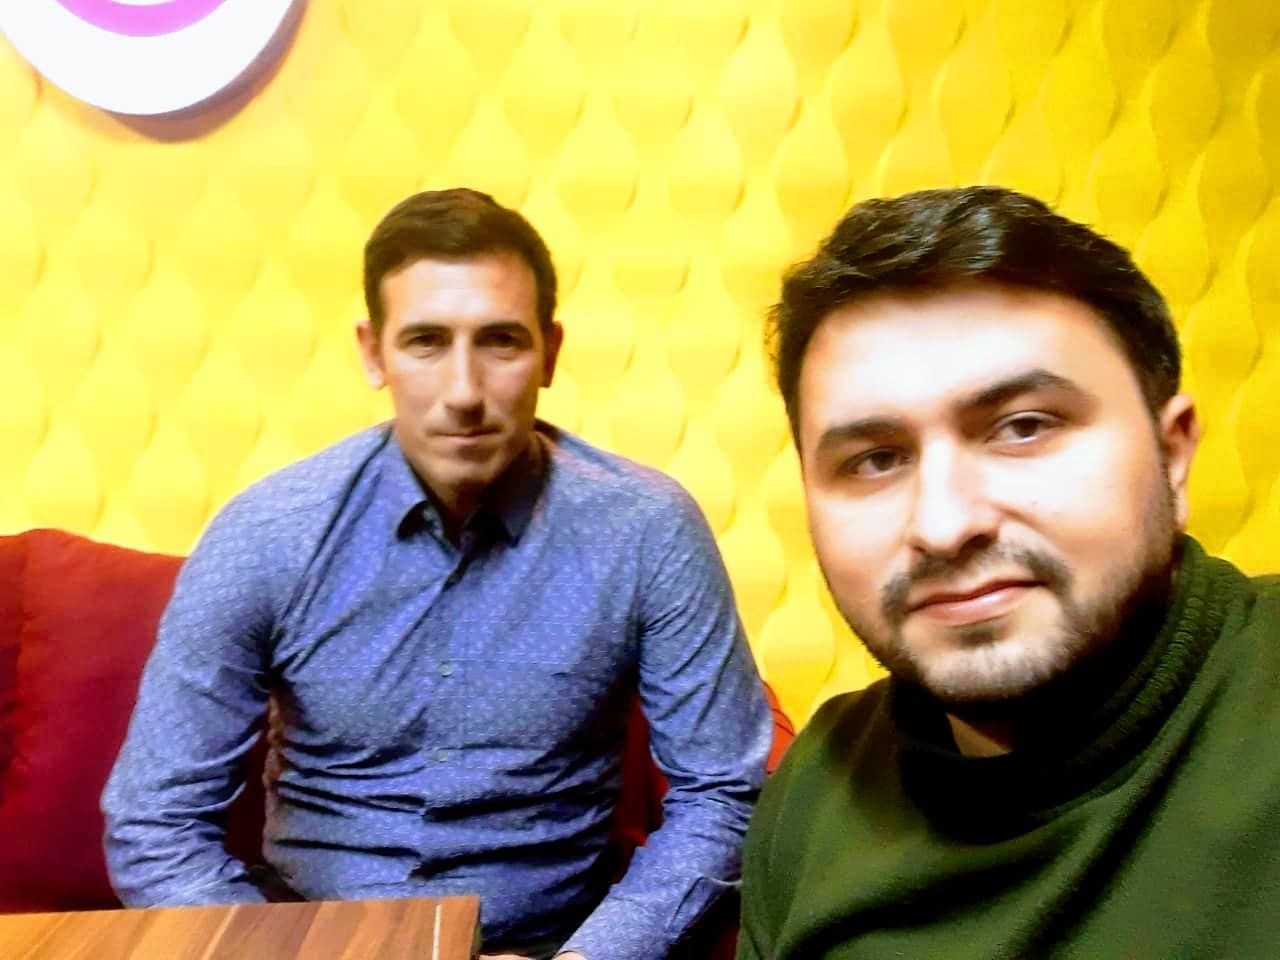 Futboldan gedən tanınmış hakim “Sportinfo TV”yə gəldi və... VİDEO